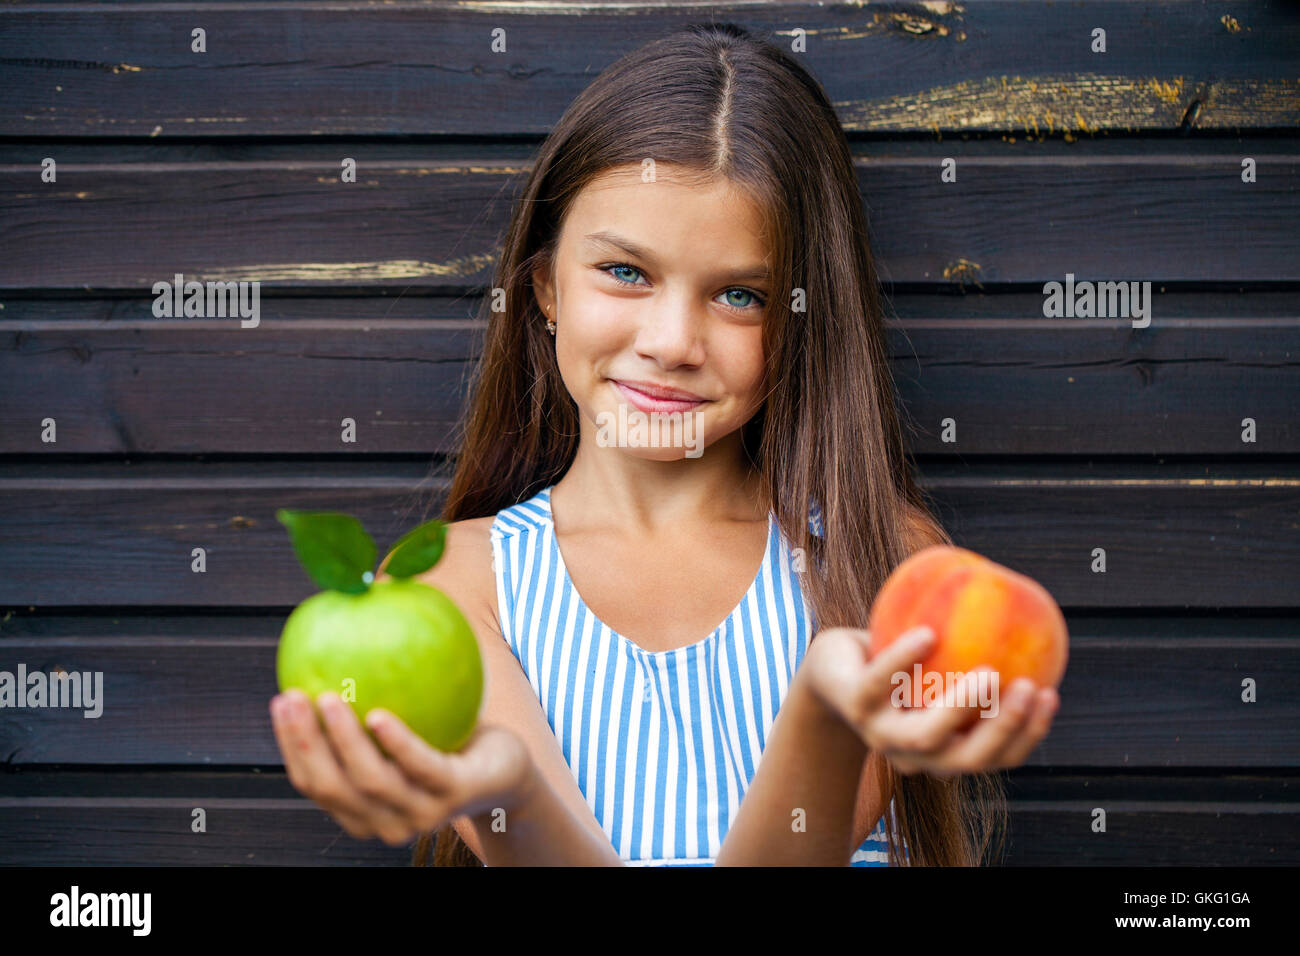 Девочка показала персик. Яблоко и апельсин в руках. Девушка держит яблоко. Девушка держит персик. Девушка держит яблоко в руке.